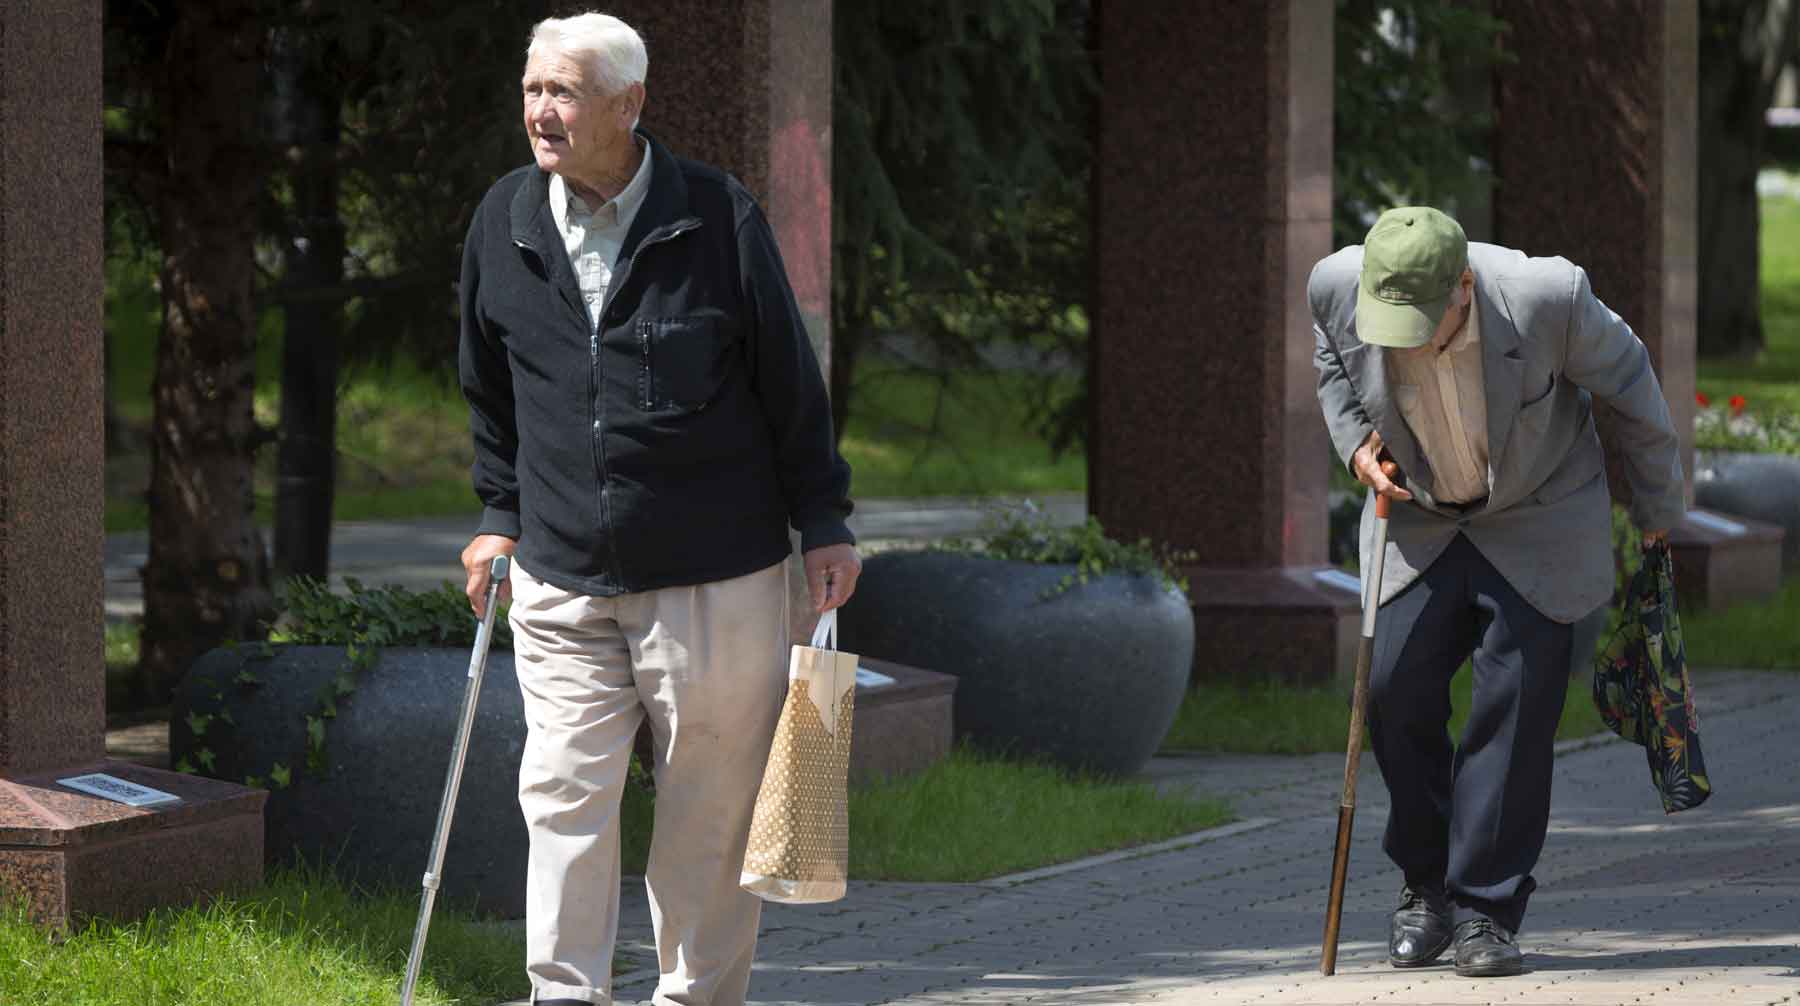 Служба статистики оценит качество жизни пожилых людей по новой методике, которую применят на практике до 31 октября 2019 года Фото: © GLOBAL LOOK press / Nikolay Gyngazov